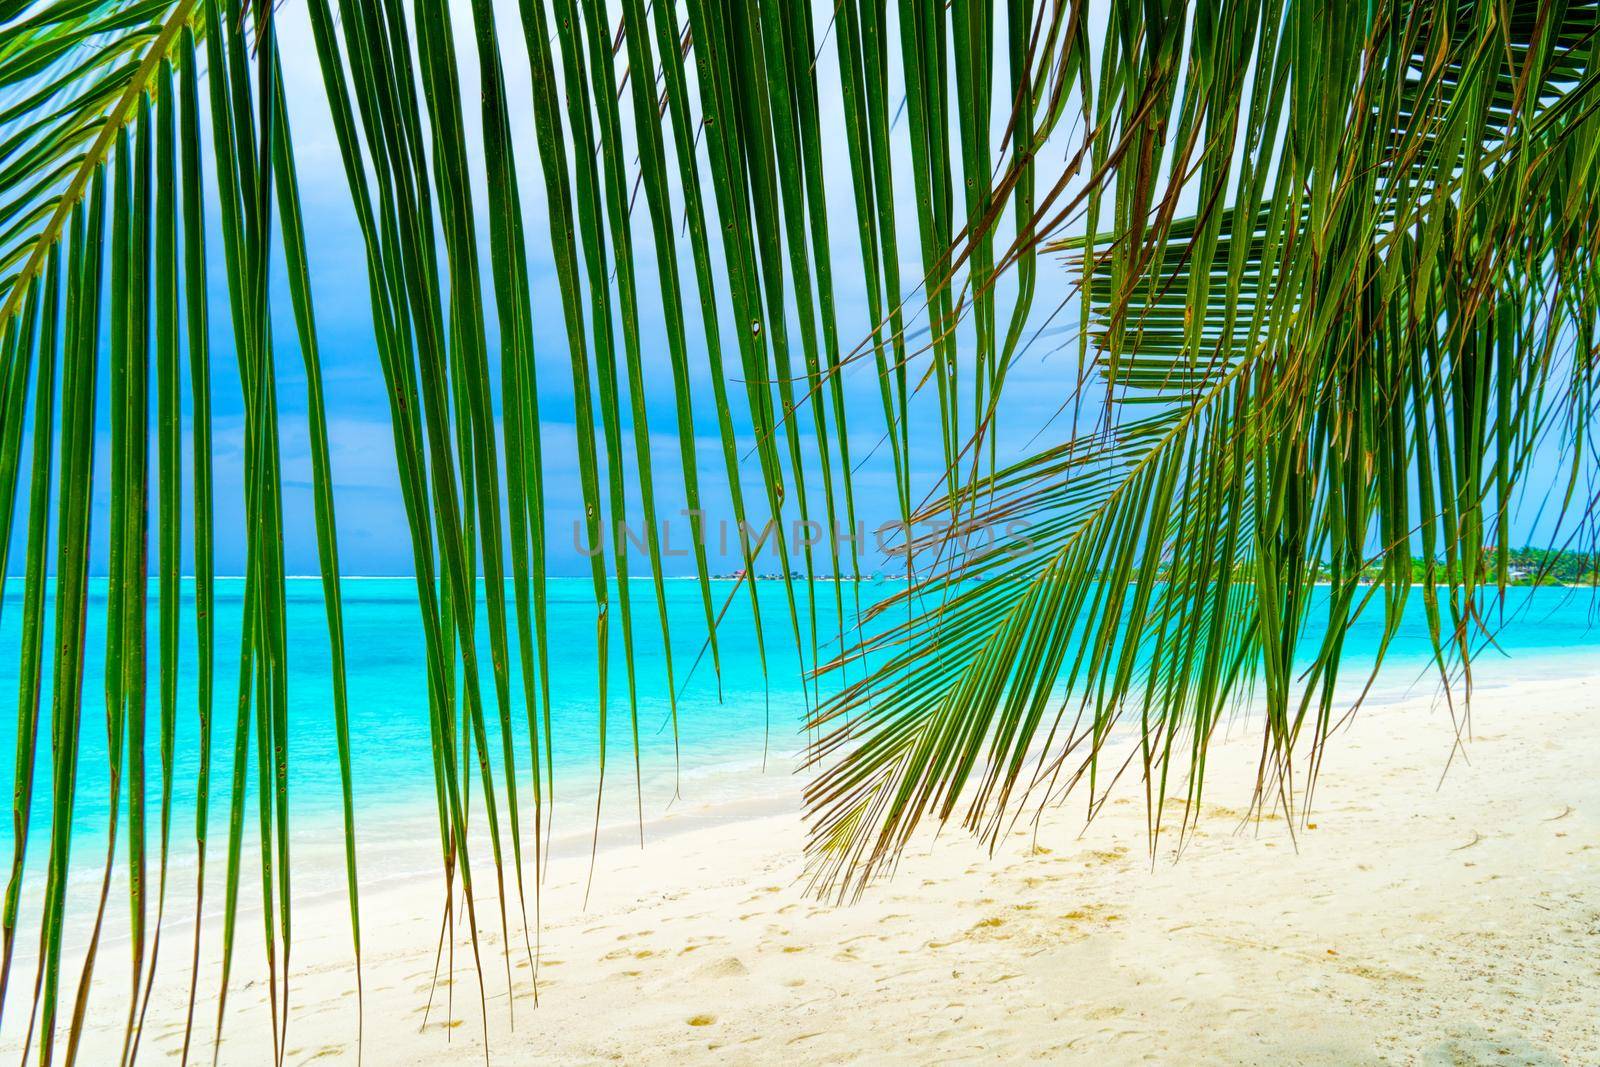 View of nice tropical beach with some palms by kolesnikov_studio